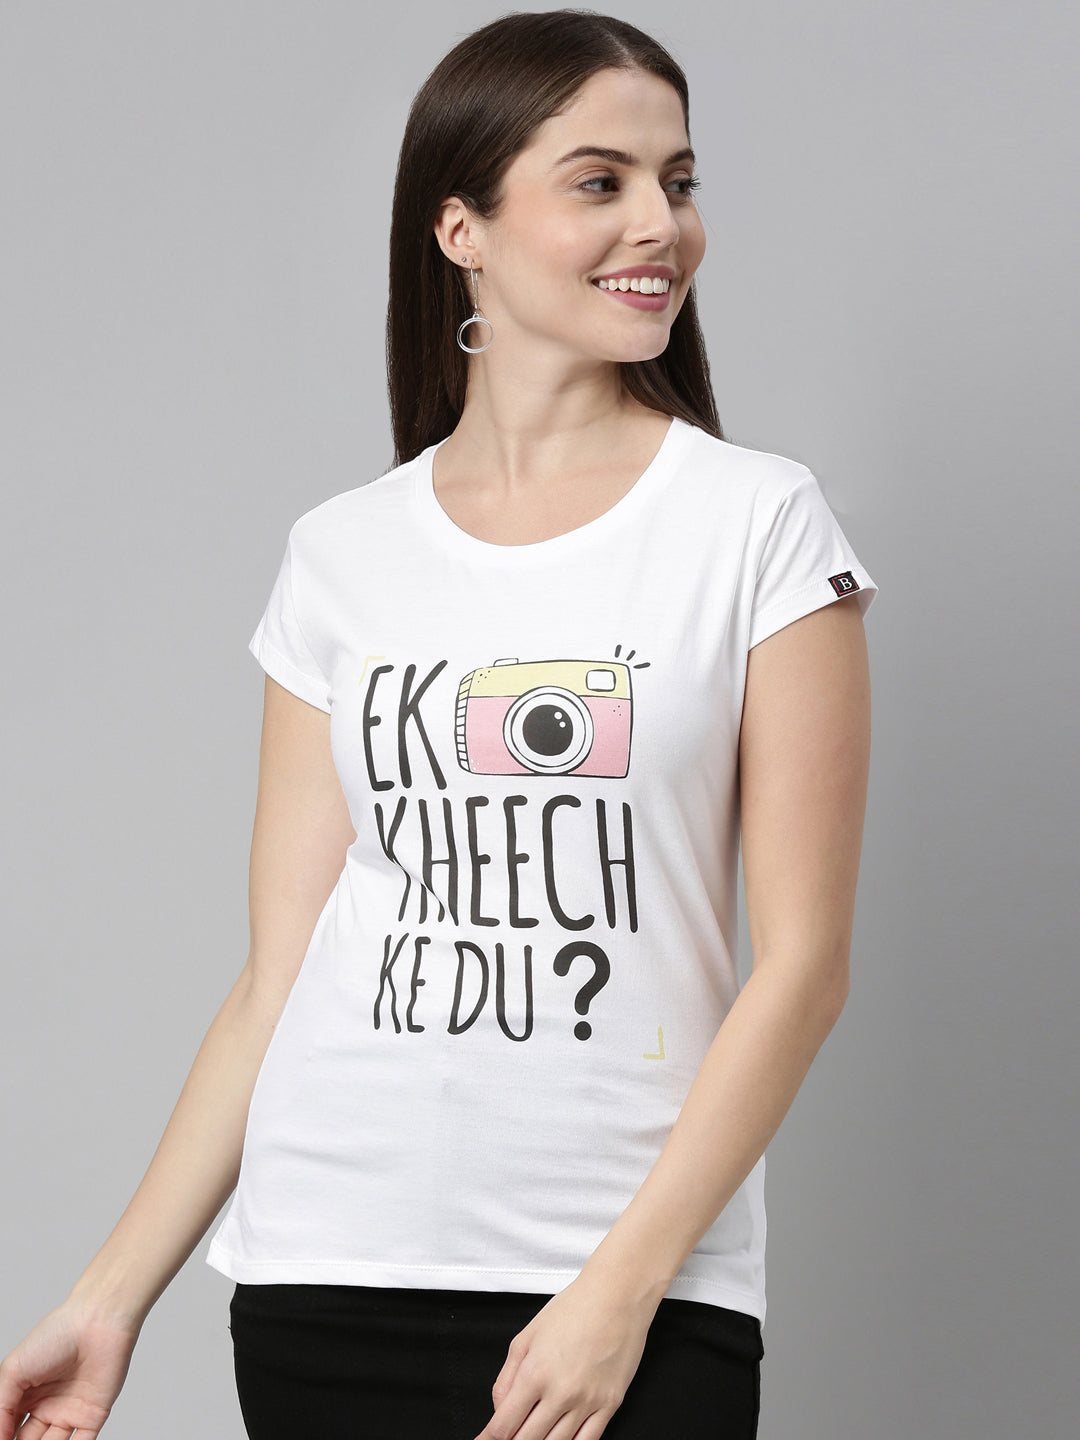 Ek Kheech K Du T-Shirt Women's Graphic Tees Bushirt   